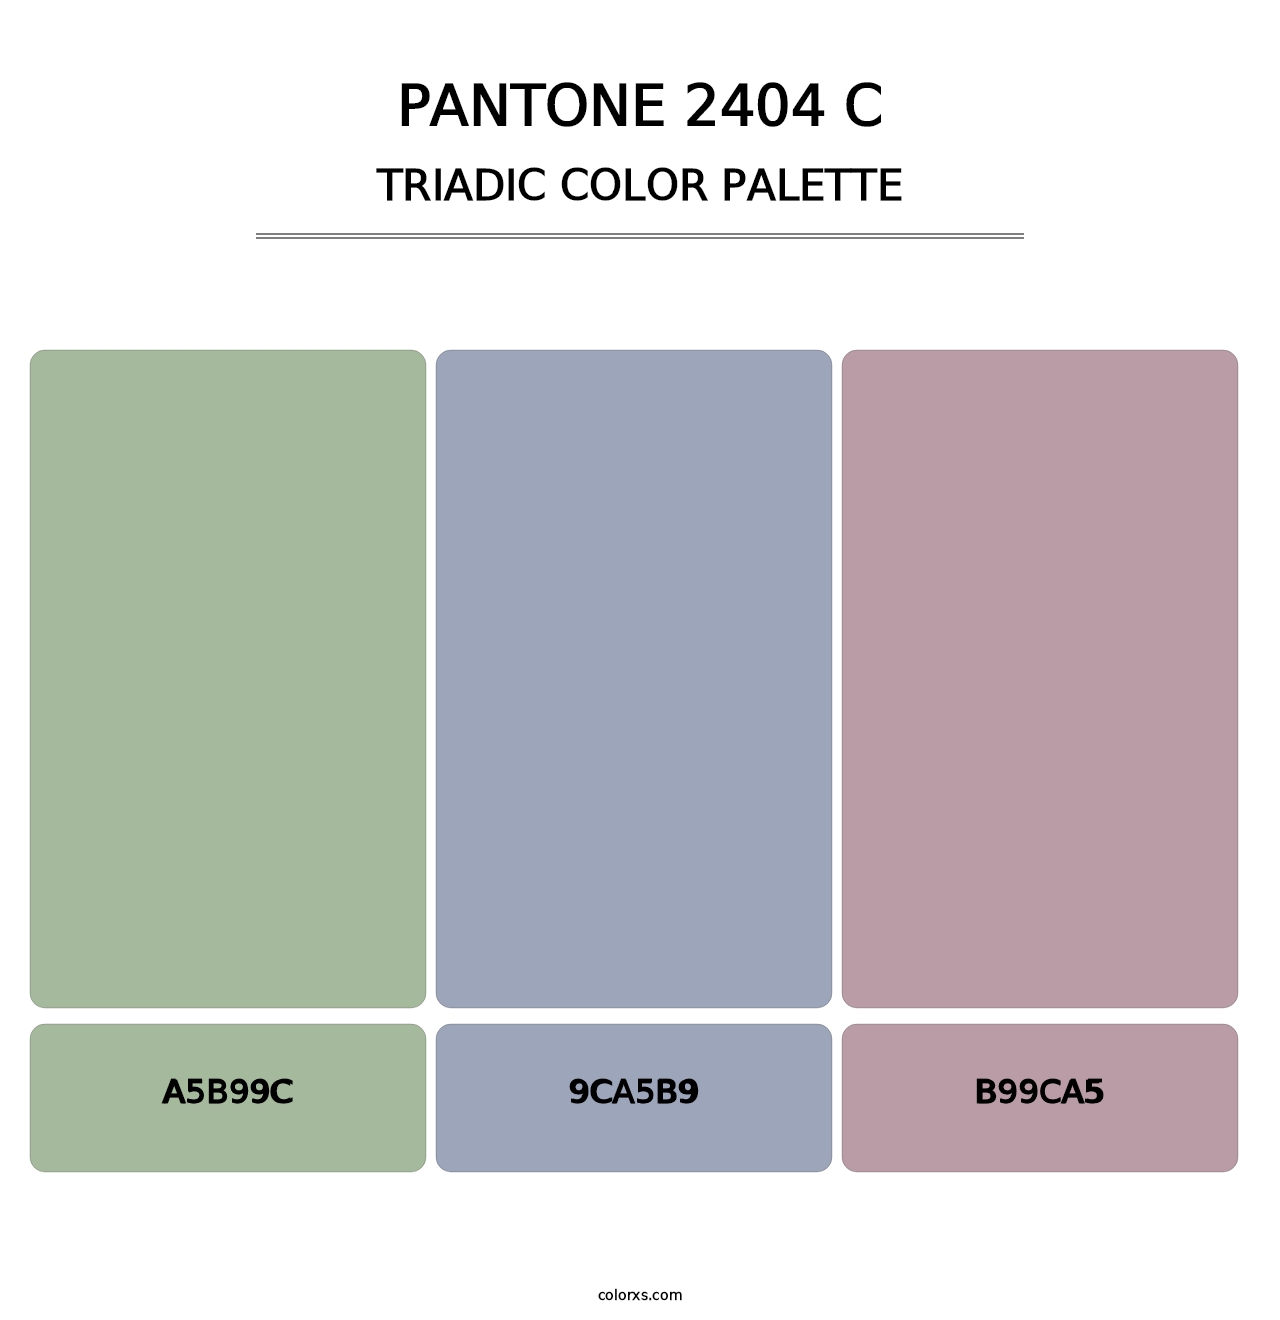 PANTONE 2404 C - Triadic Color Palette